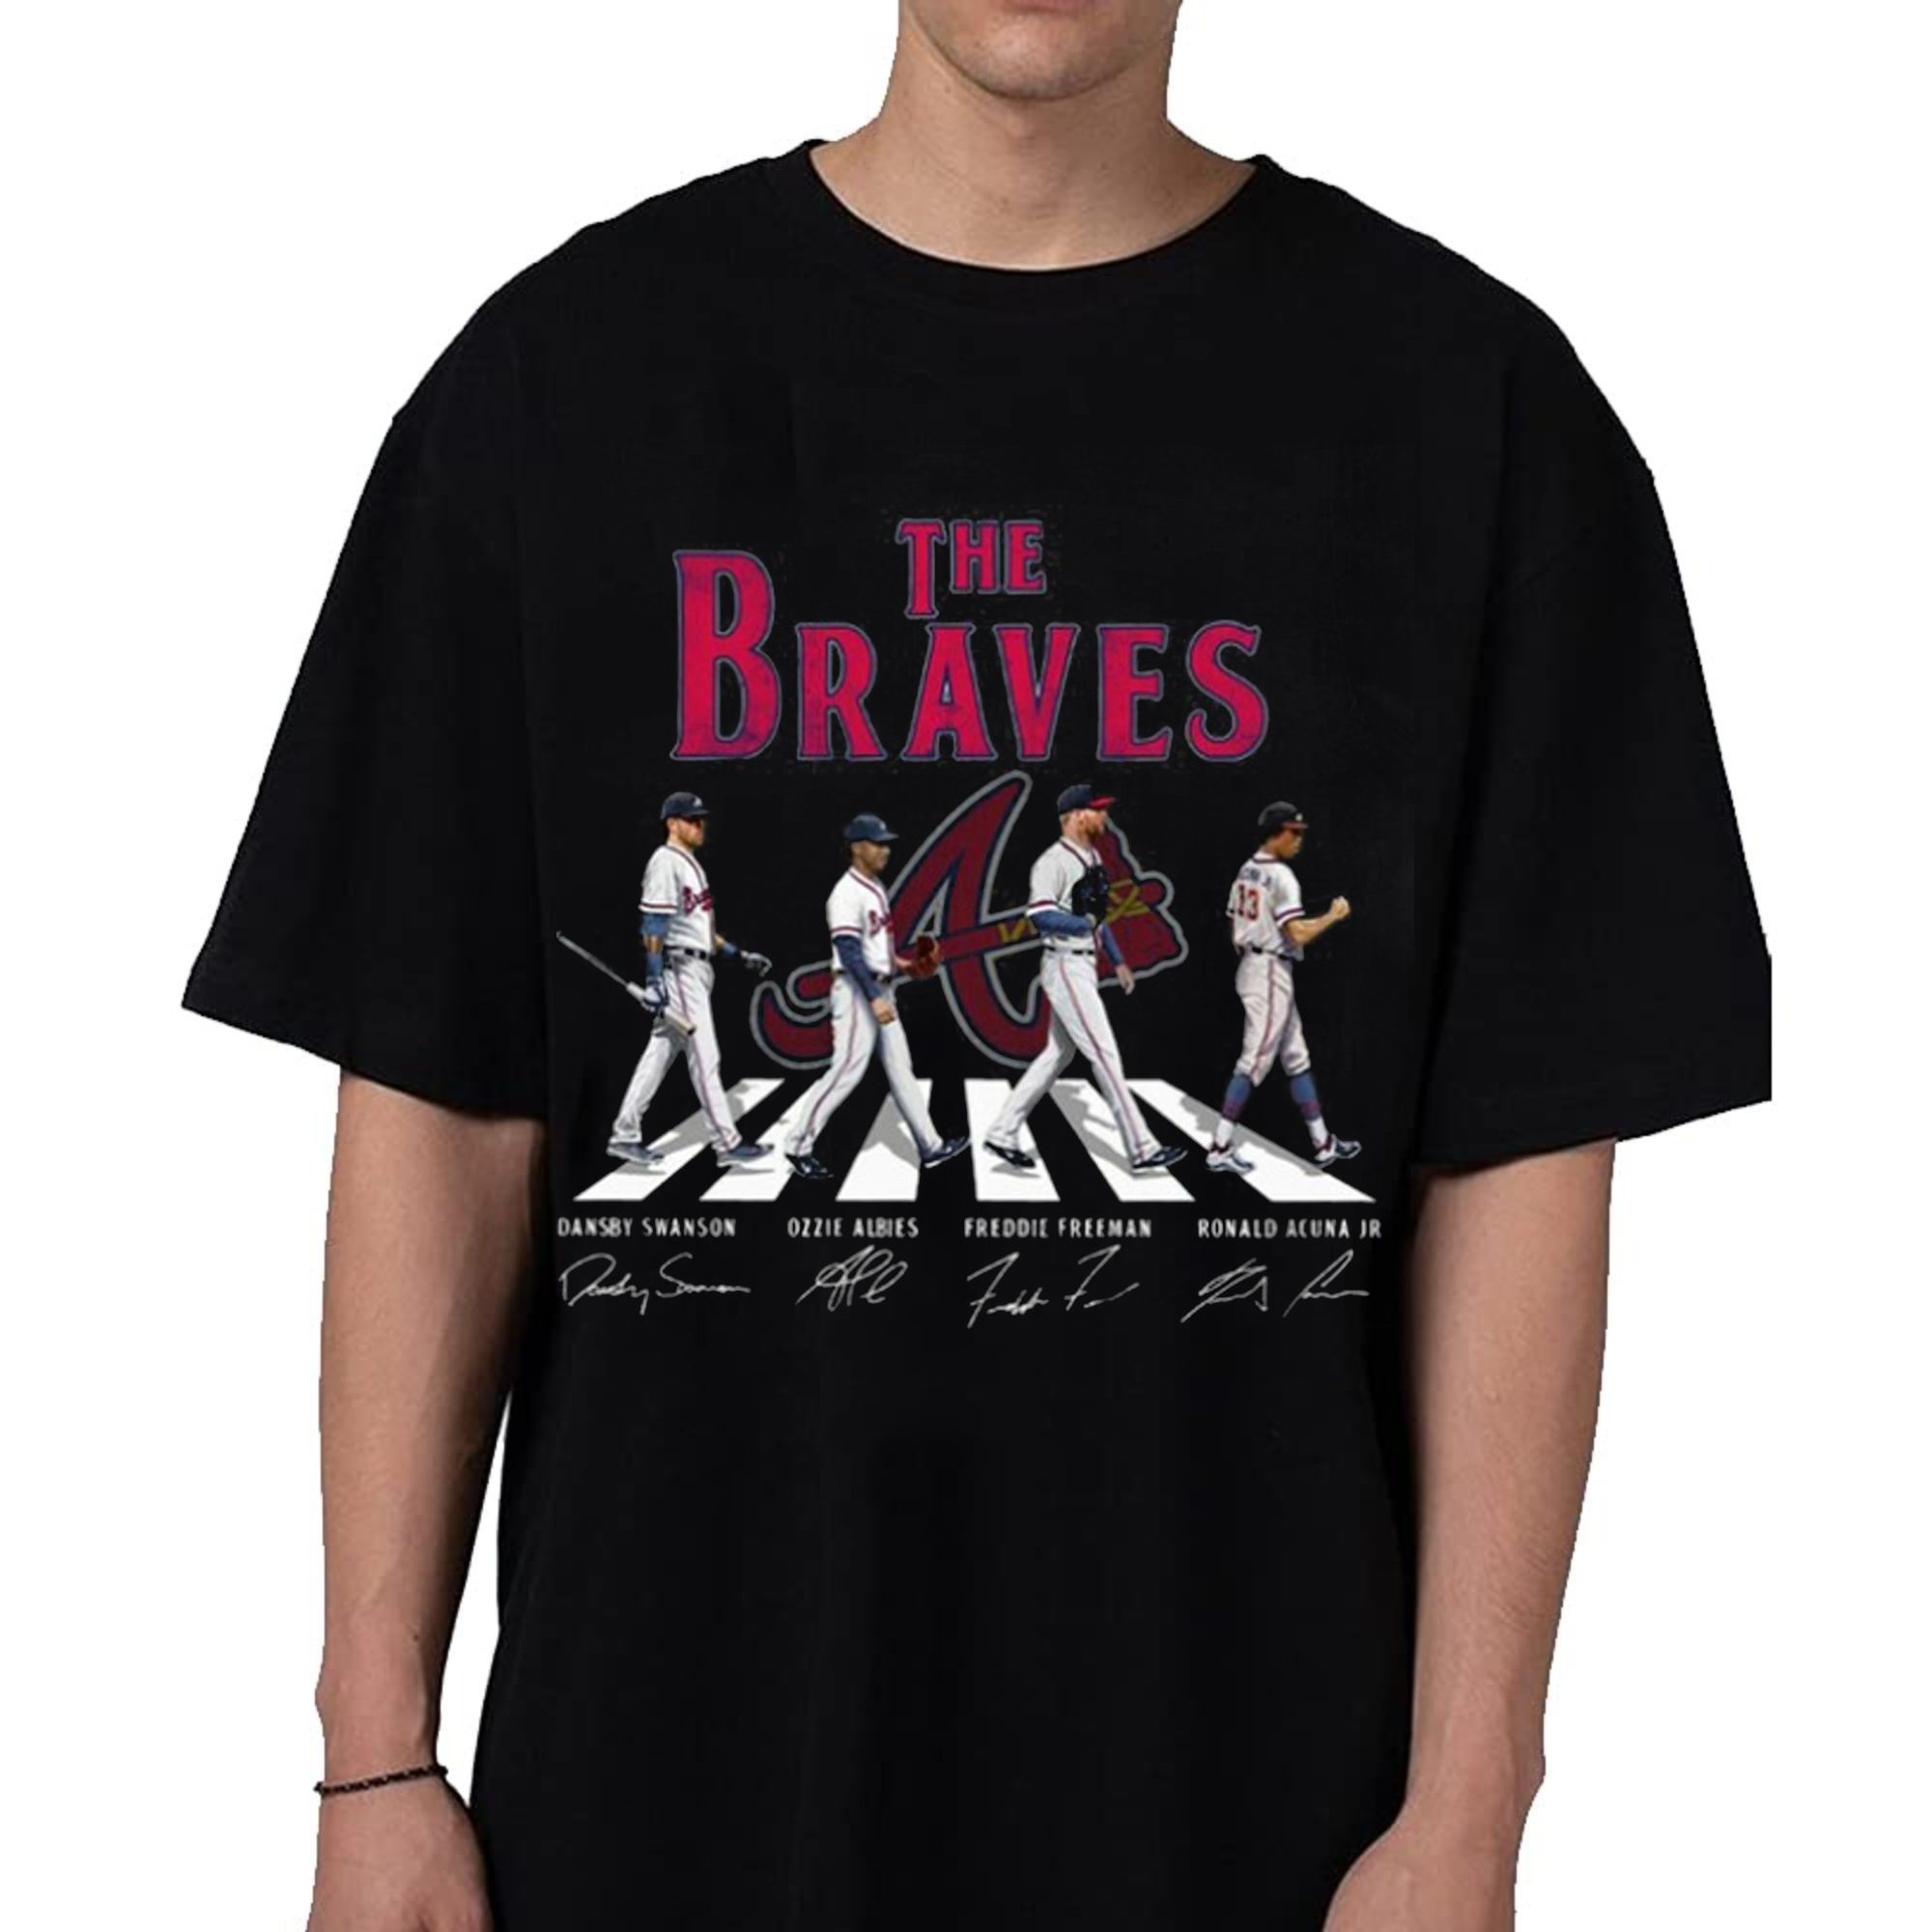 Atlanta Braves Shirt for Men Atlanta Braves Shirt for Women 